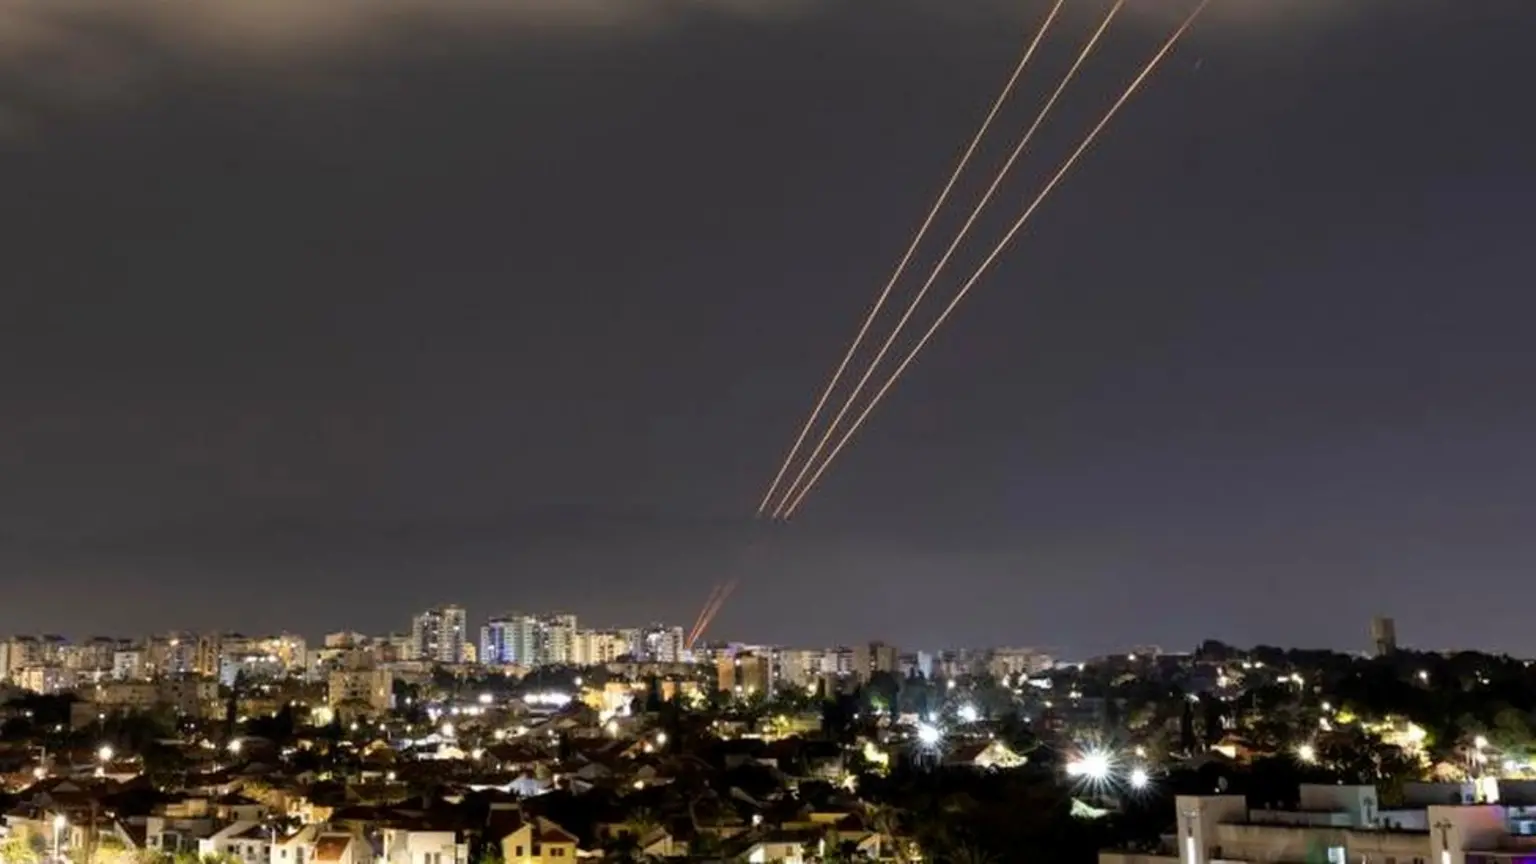 hakmarrja irani sulme te paprecenda me raketa dhe dron ndaj izraelit cfare ndodhi deri me tani